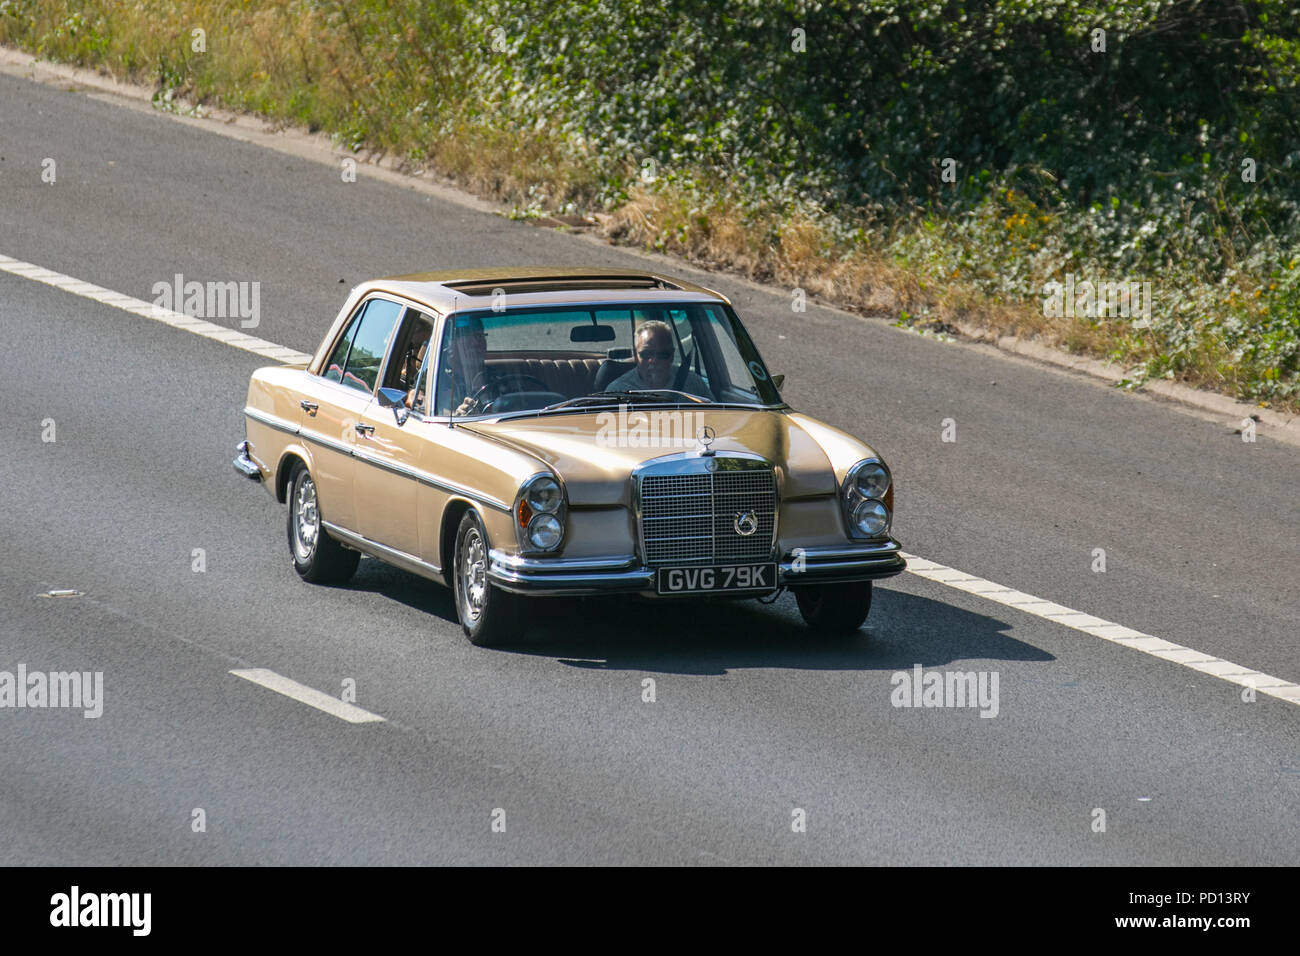 1972 Gold Mercedes 280 SE UK il traffico veicolare, trasporti, veicoli da collezione carrozze salone, sul 3 corsia M55 Autostrada autostrada, Blackpool, Regno Unito Foto Stock